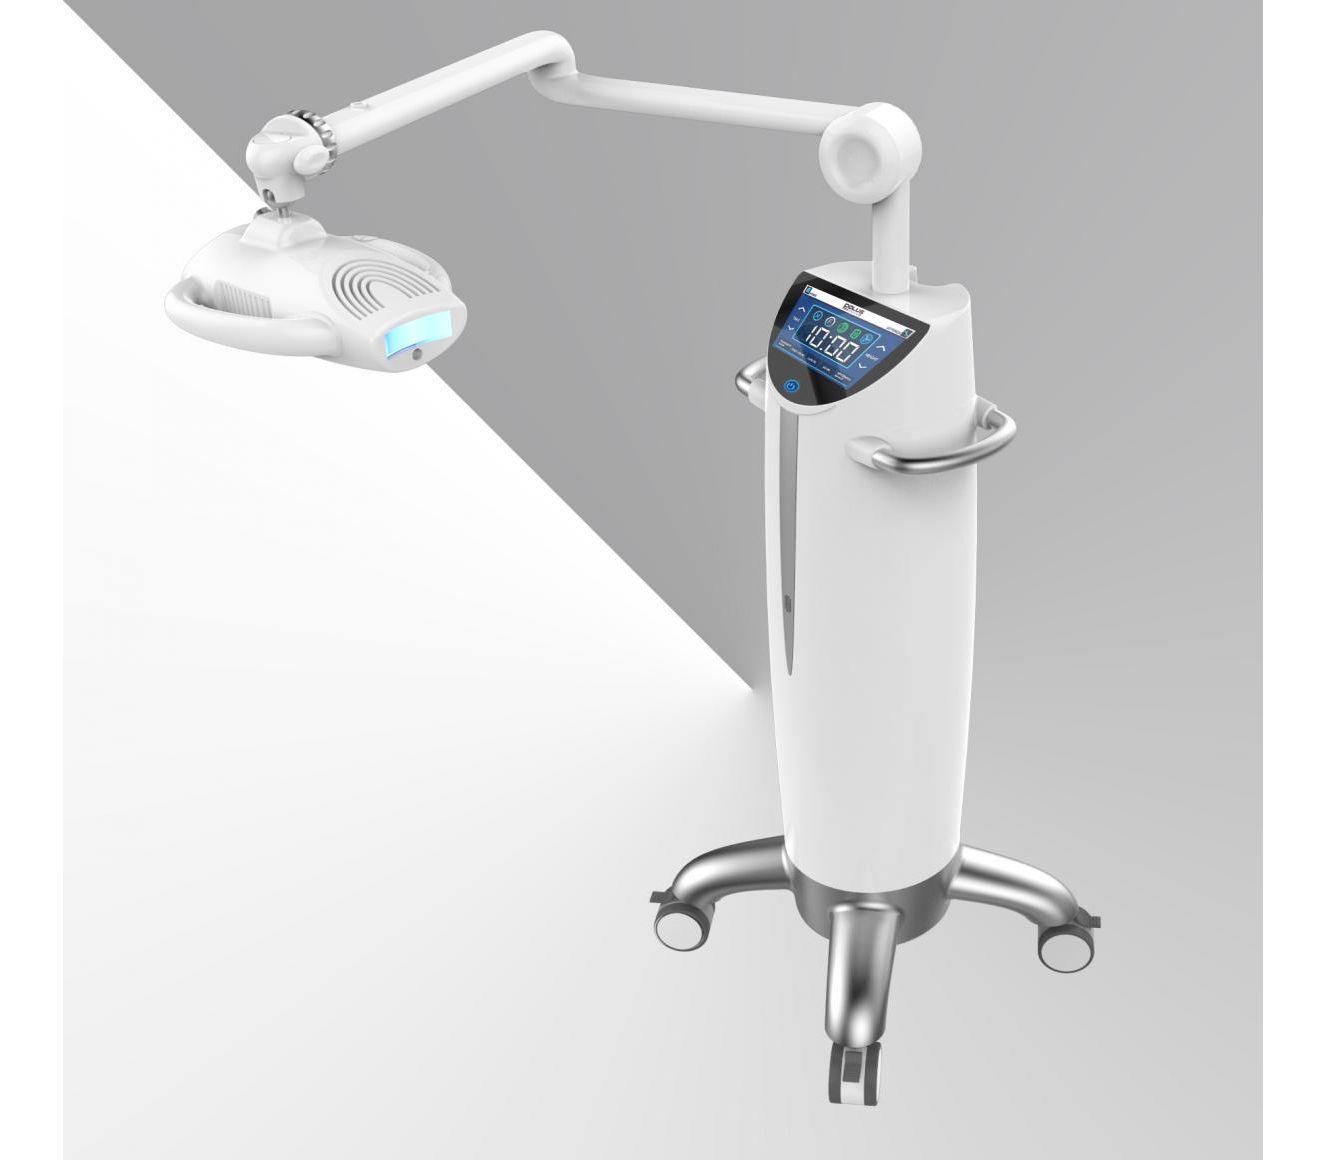 Beyond Whitening Accelerator - лампа-акселератор для профессионального отбеливания зубов